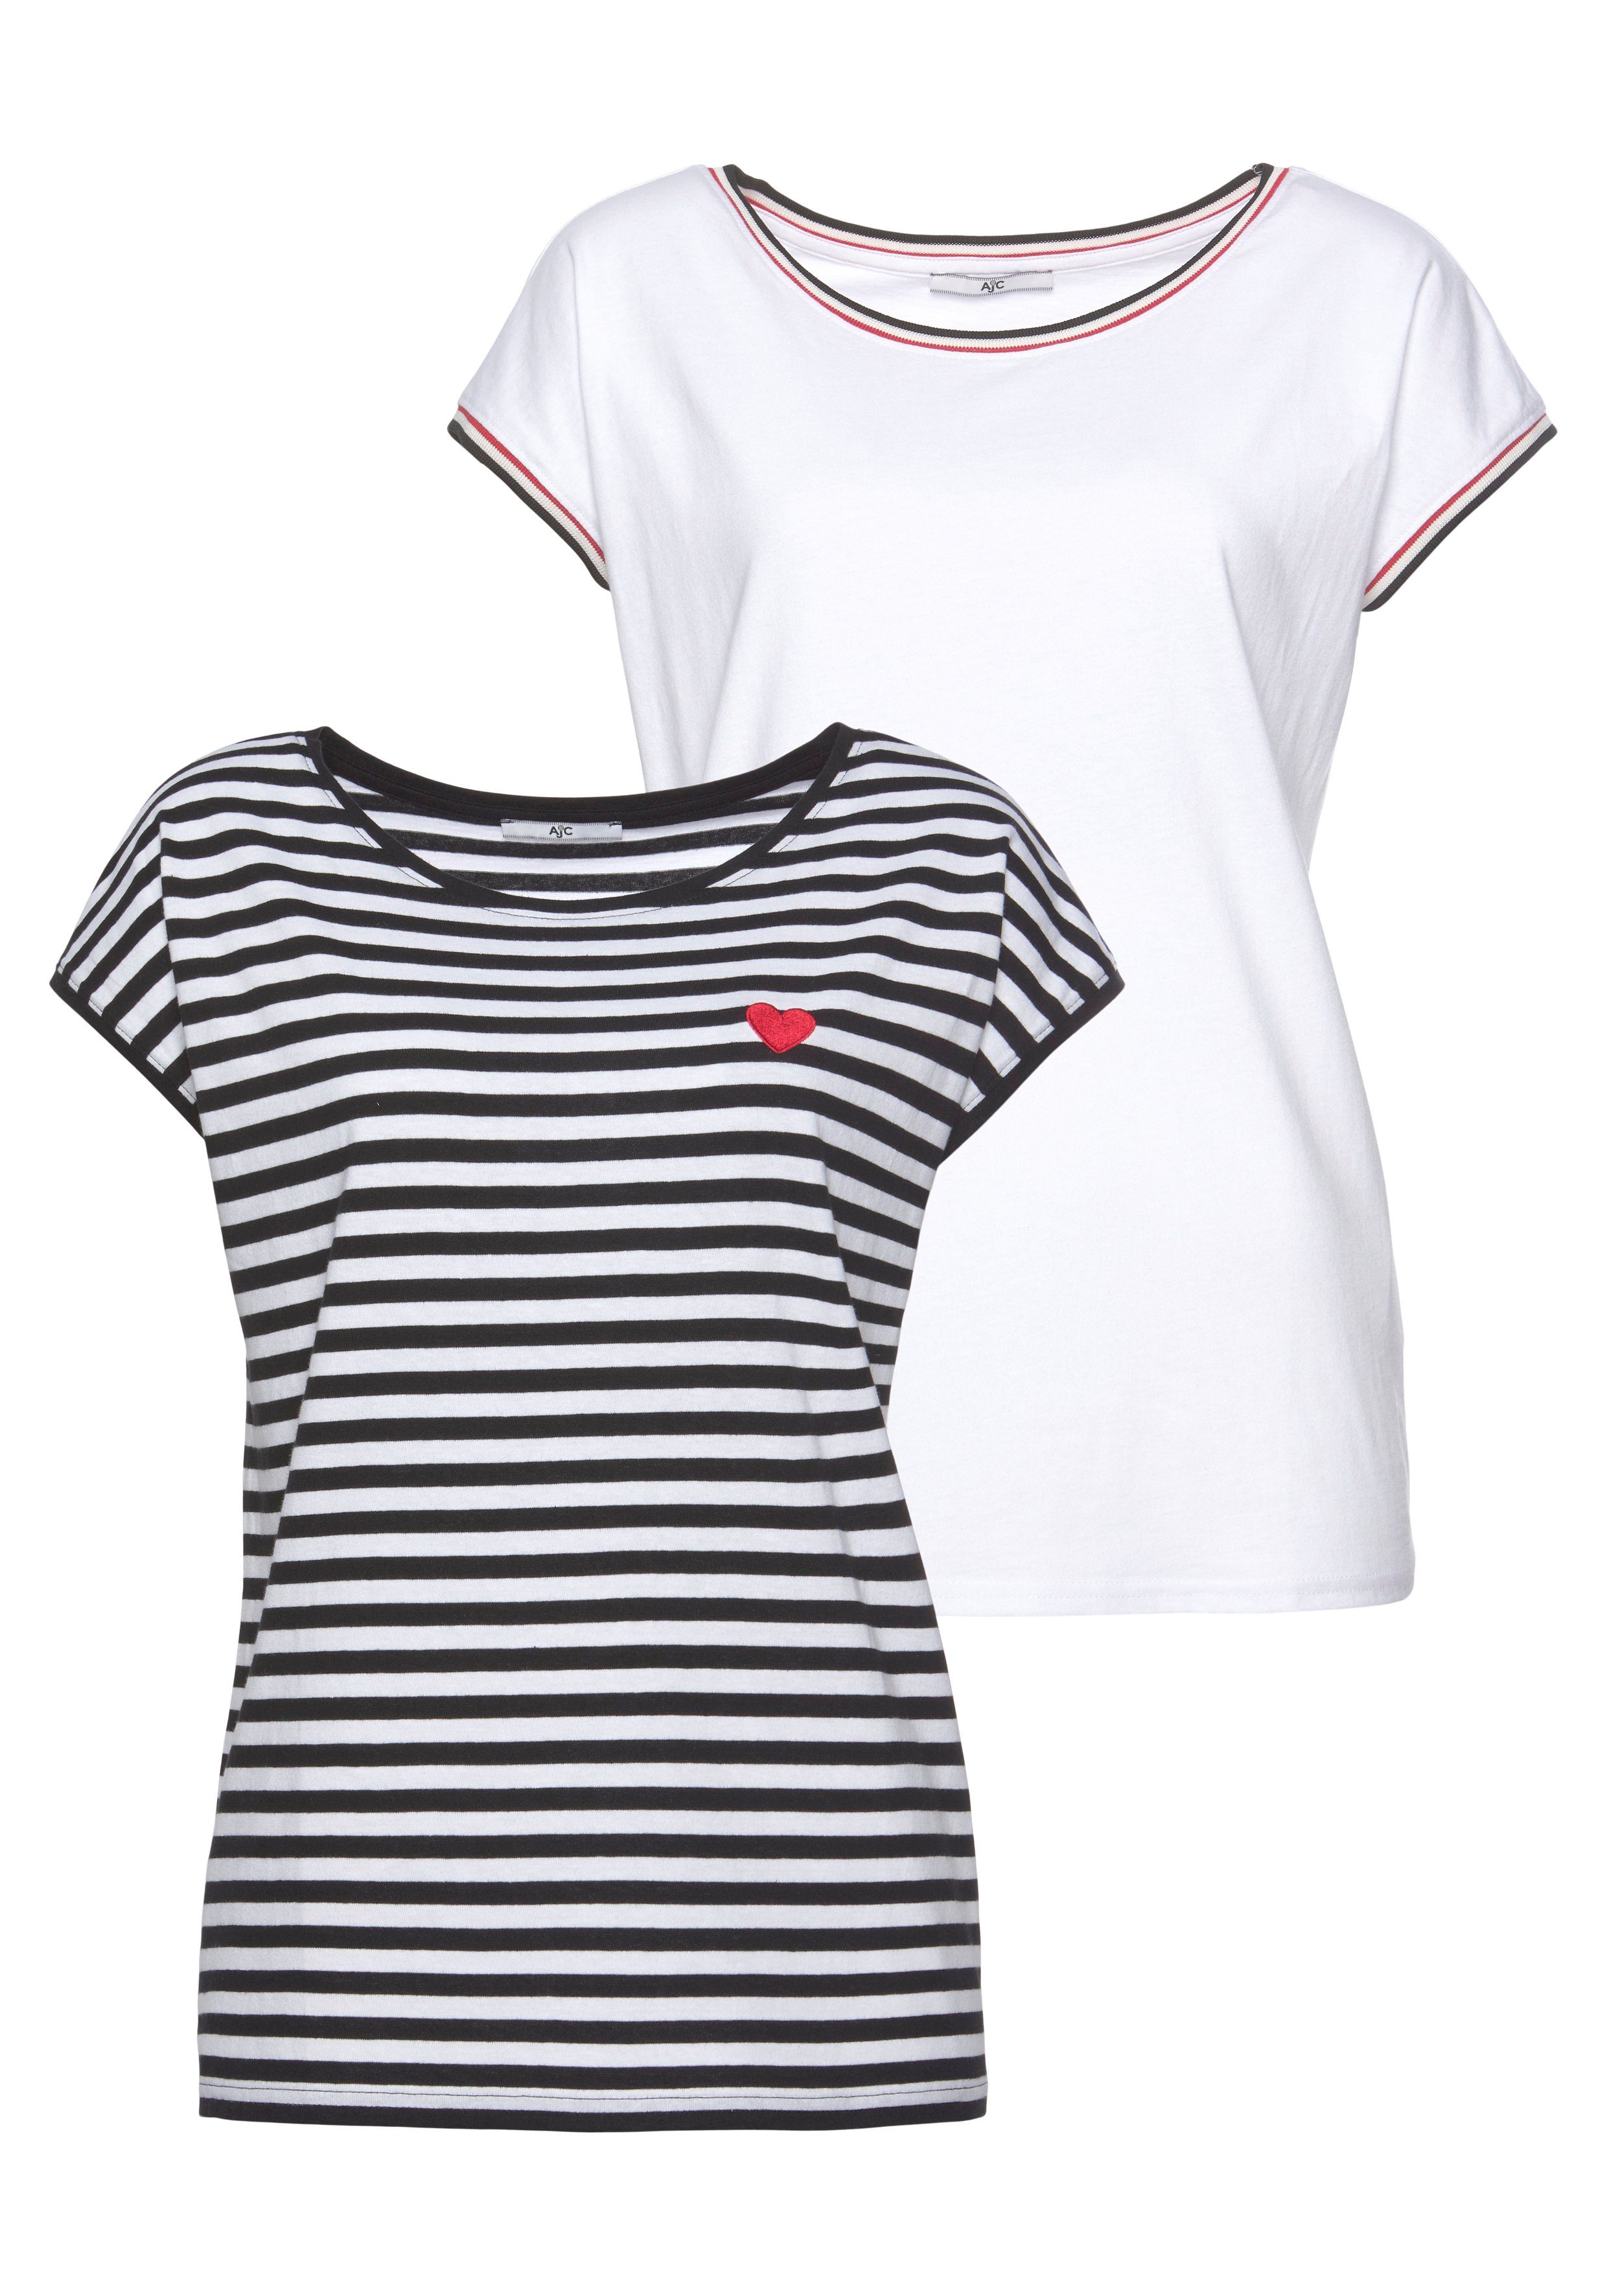 Damen Shirts AJC Rundhalsshirt im Doppelpack gestreift mit kleiner Stickerei + solid - NEUE KOLLEKTION